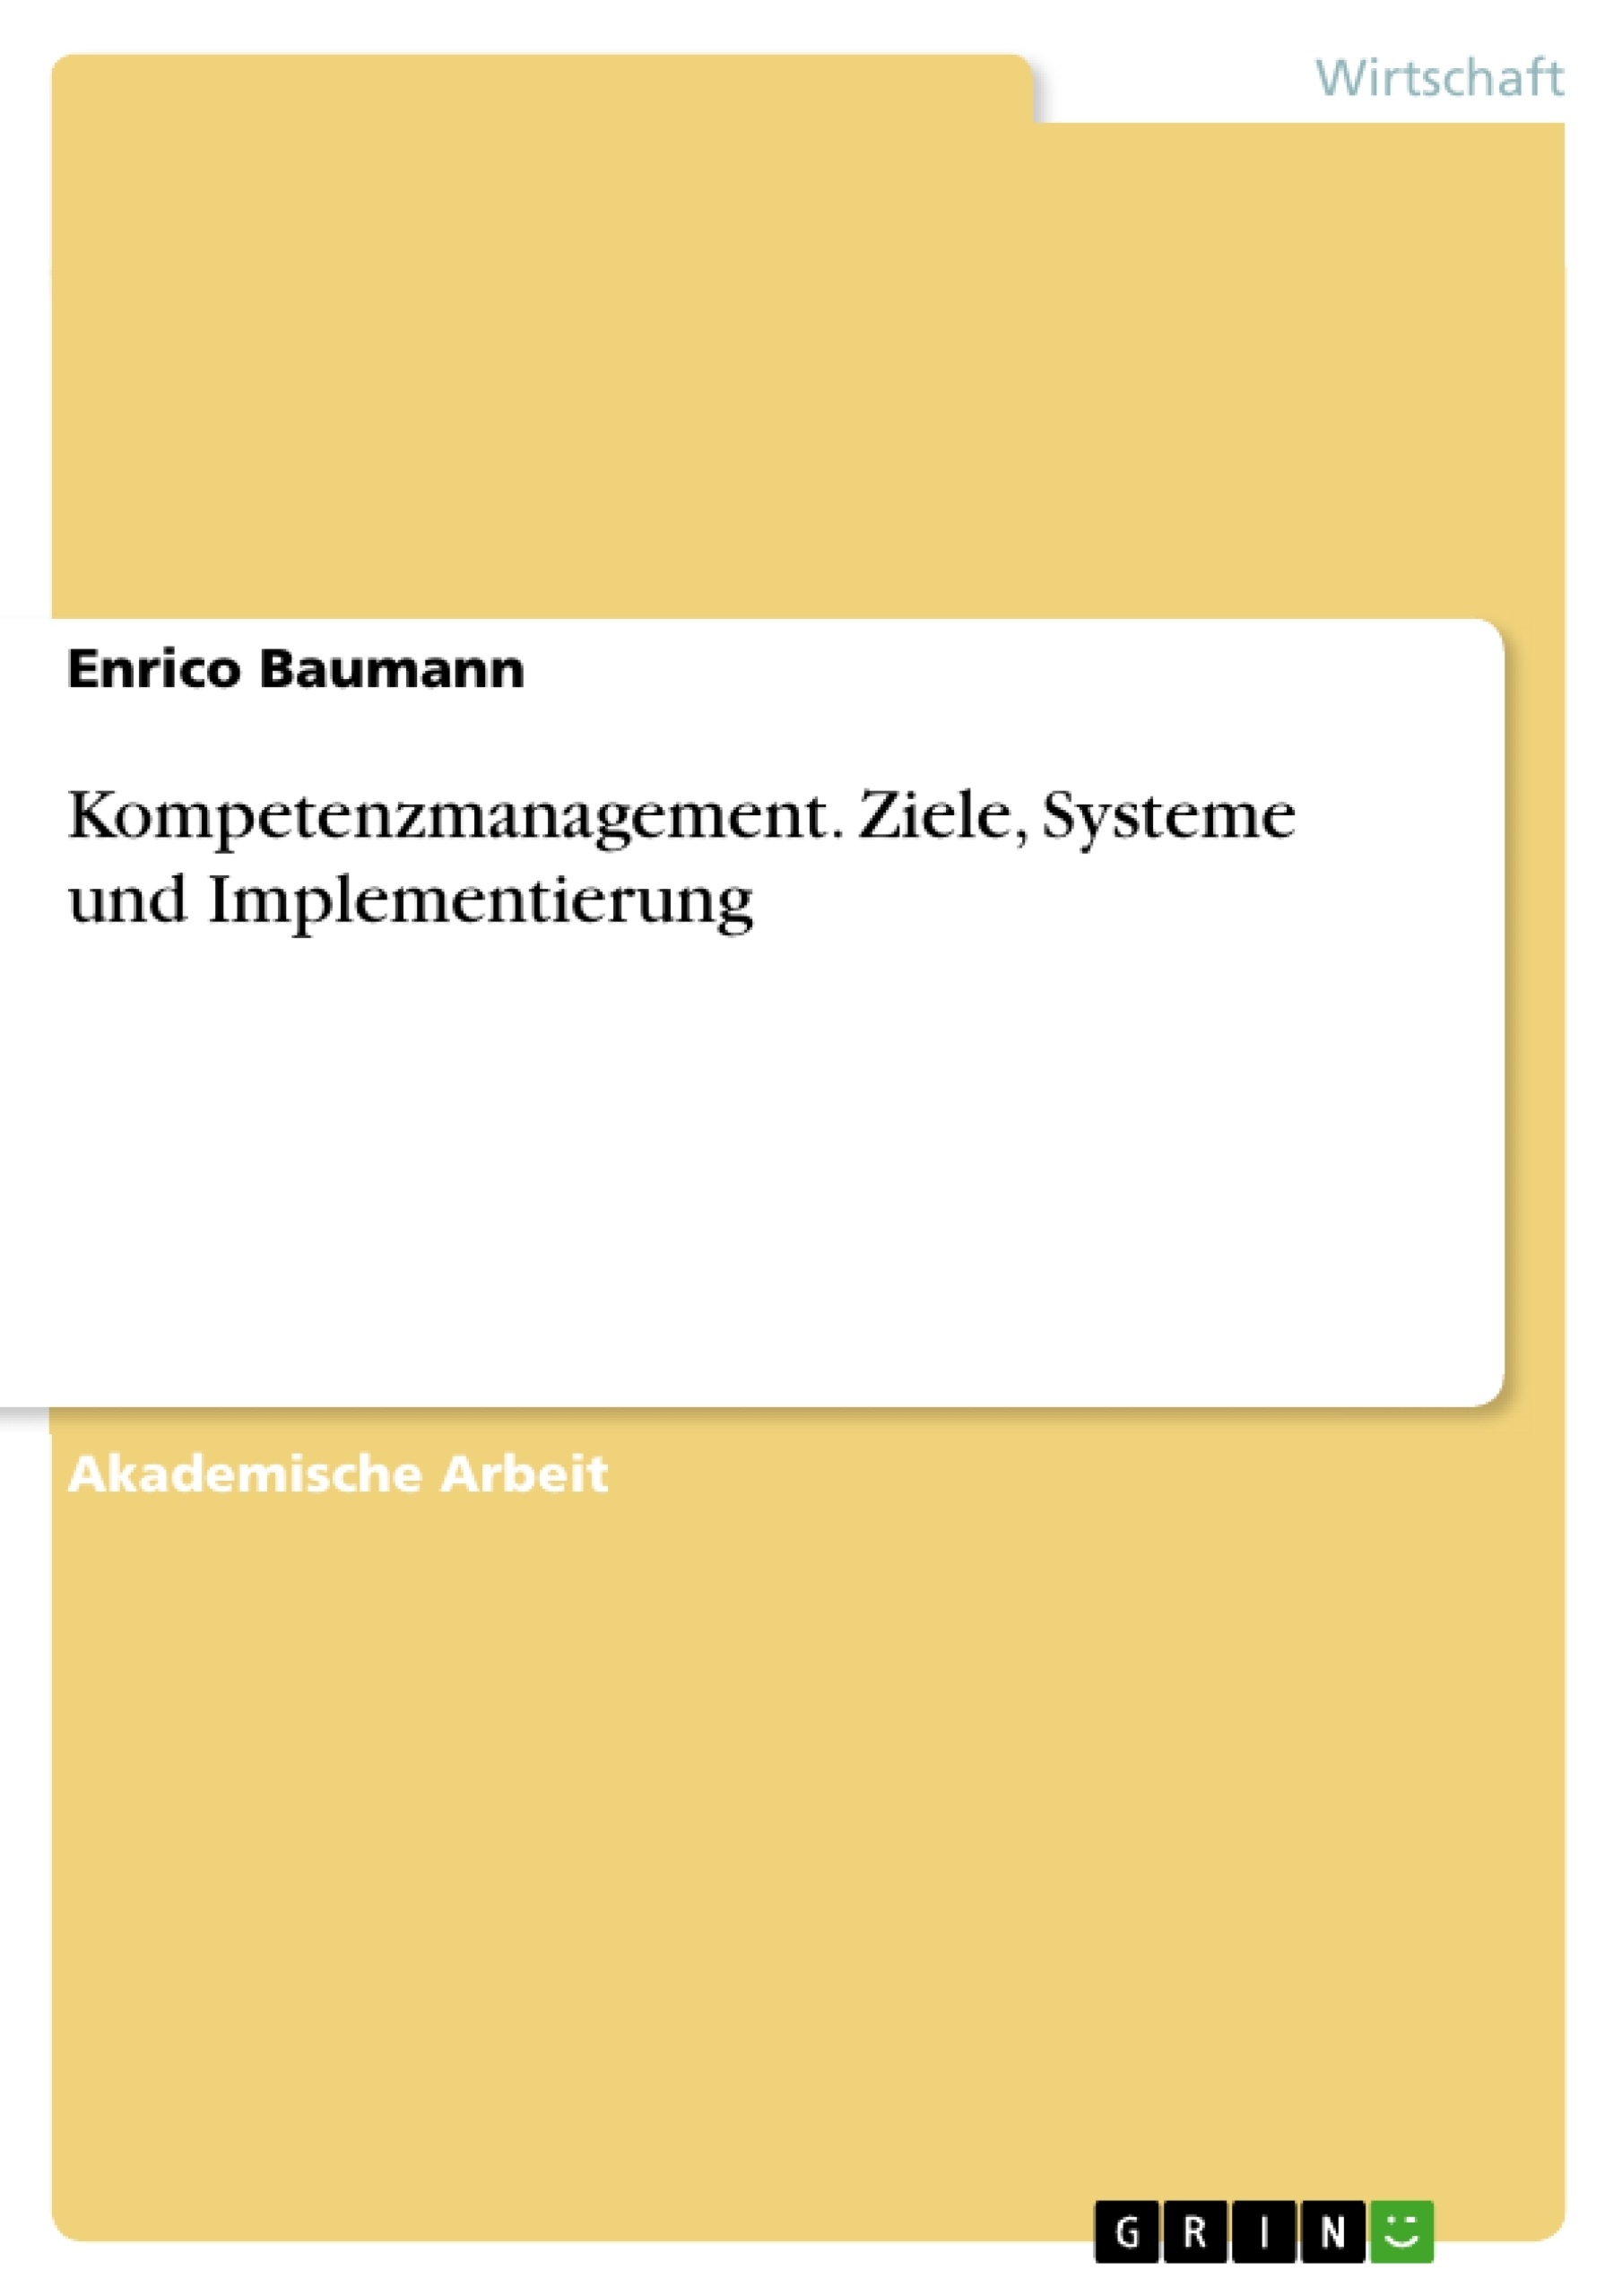 Title: Kompetenzmanagement. Ziele, Systeme und Implementierung